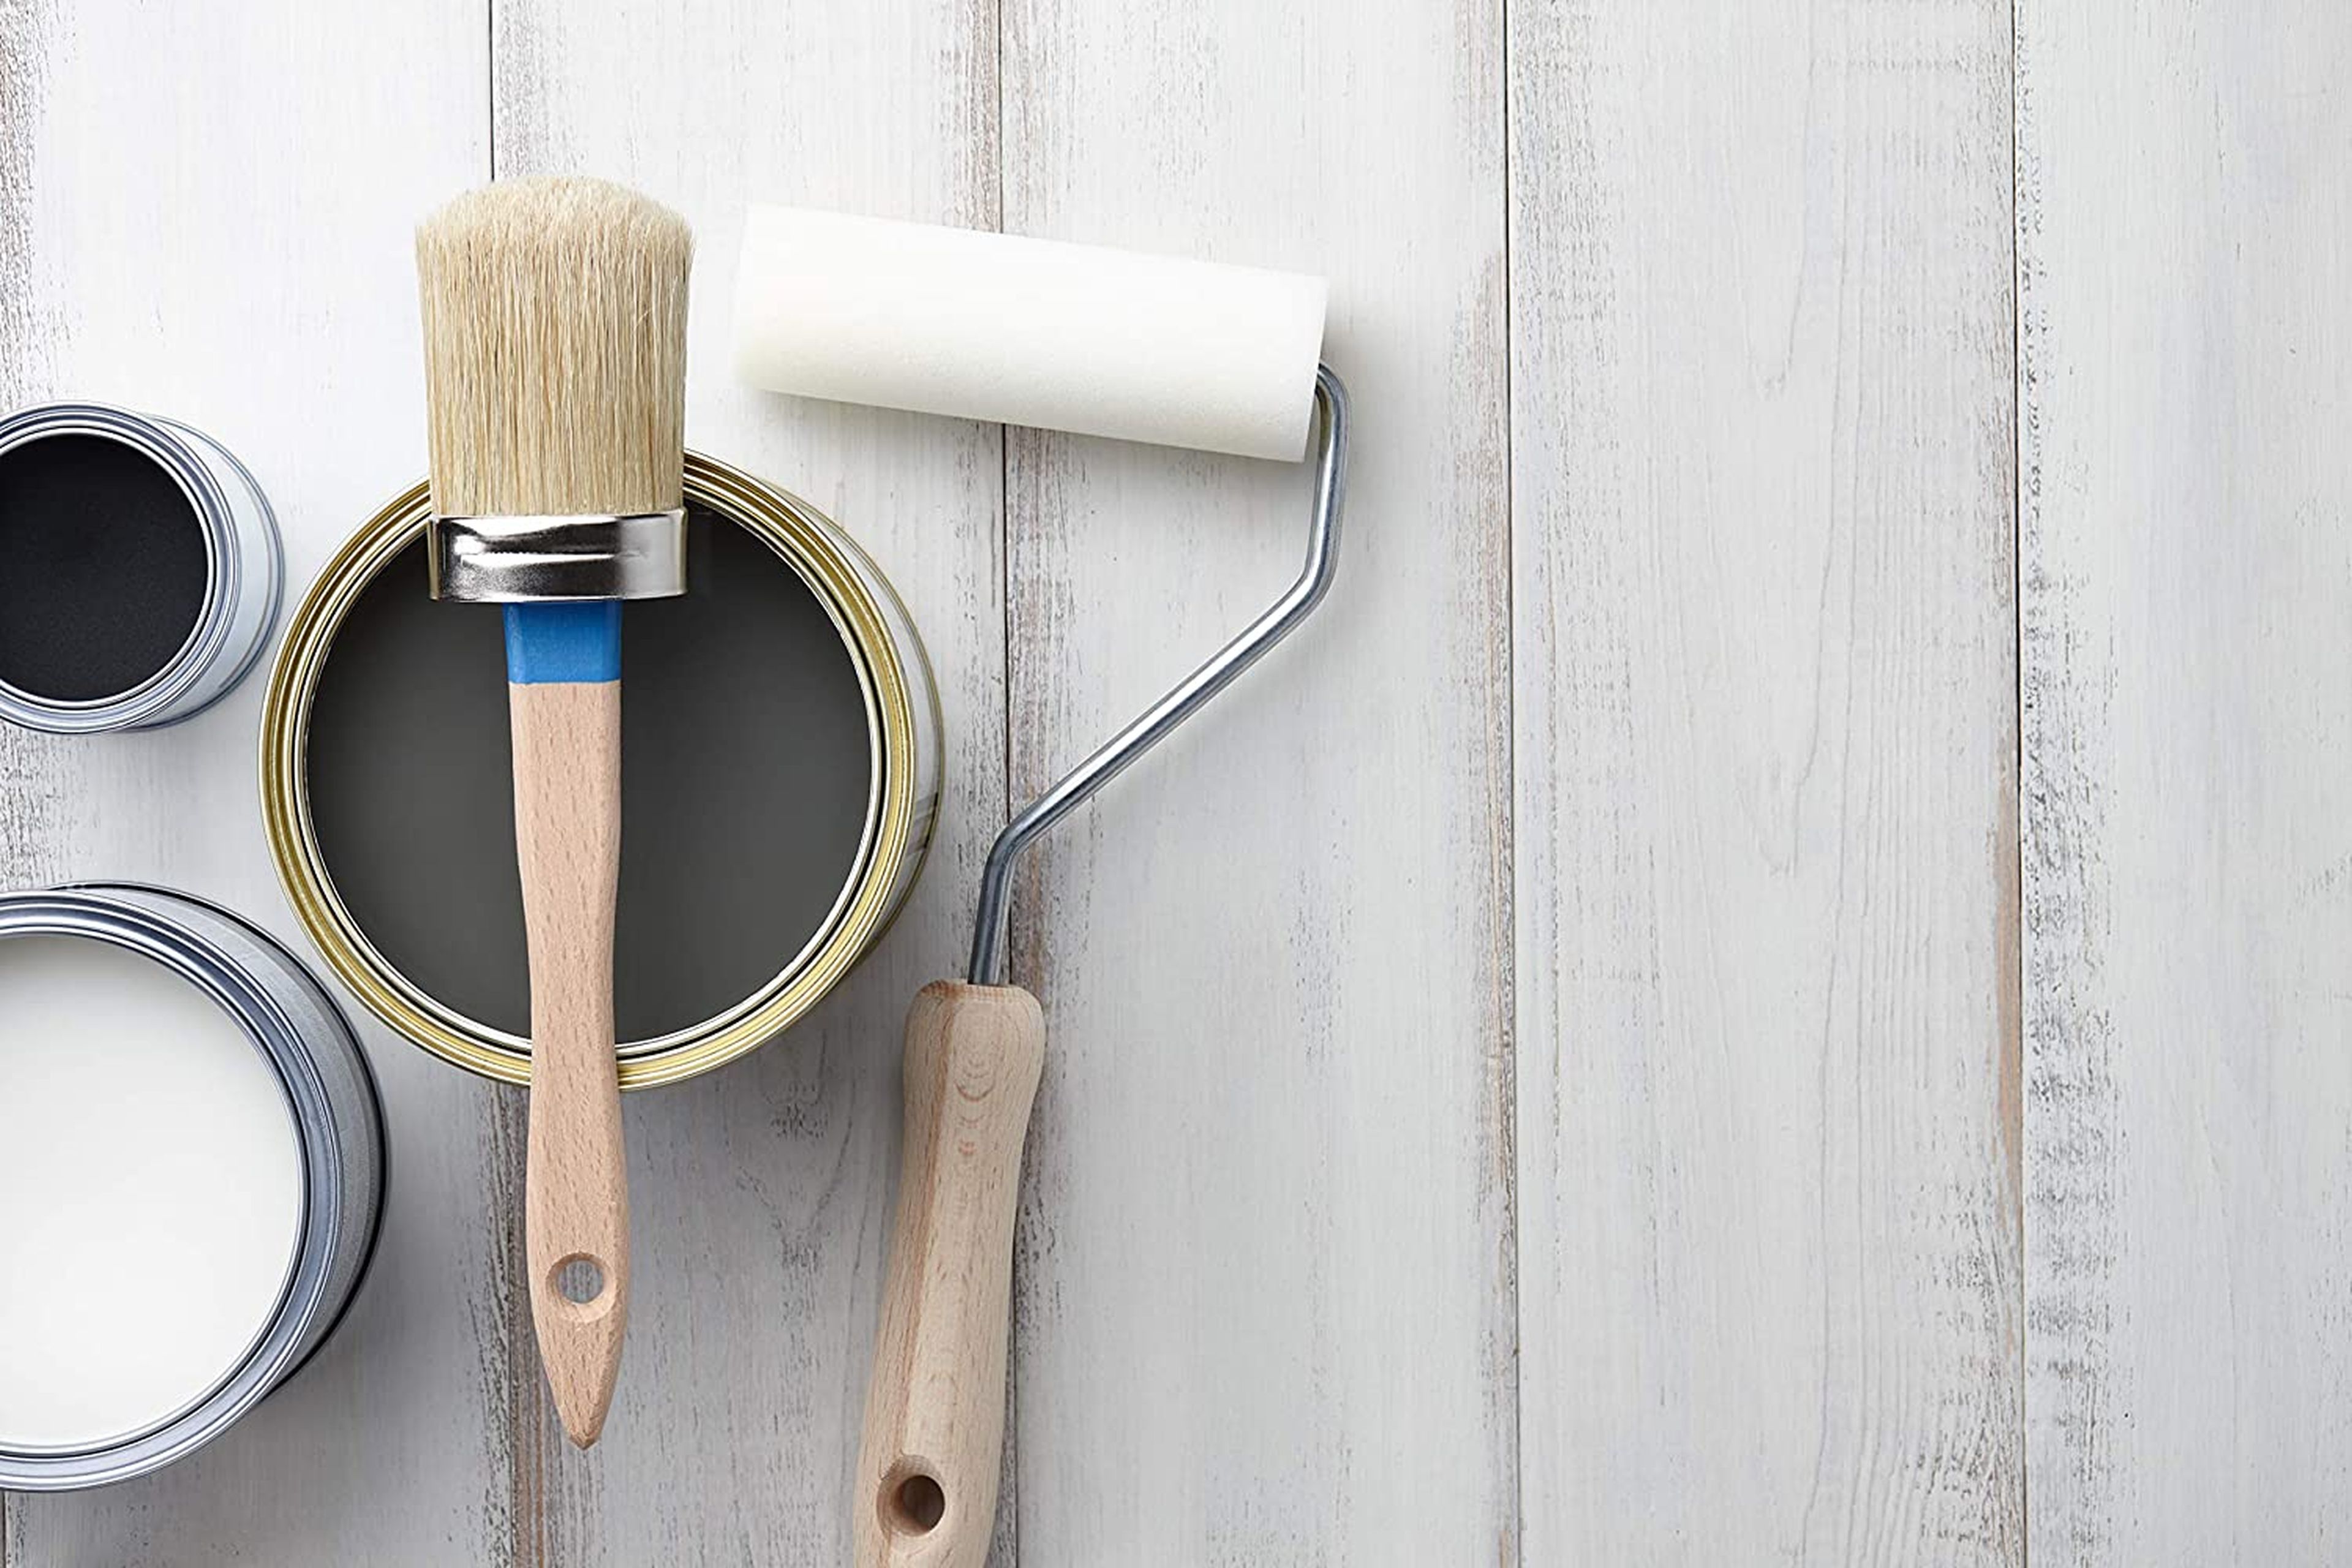 Brocha para pintar madera con lasur o braniz